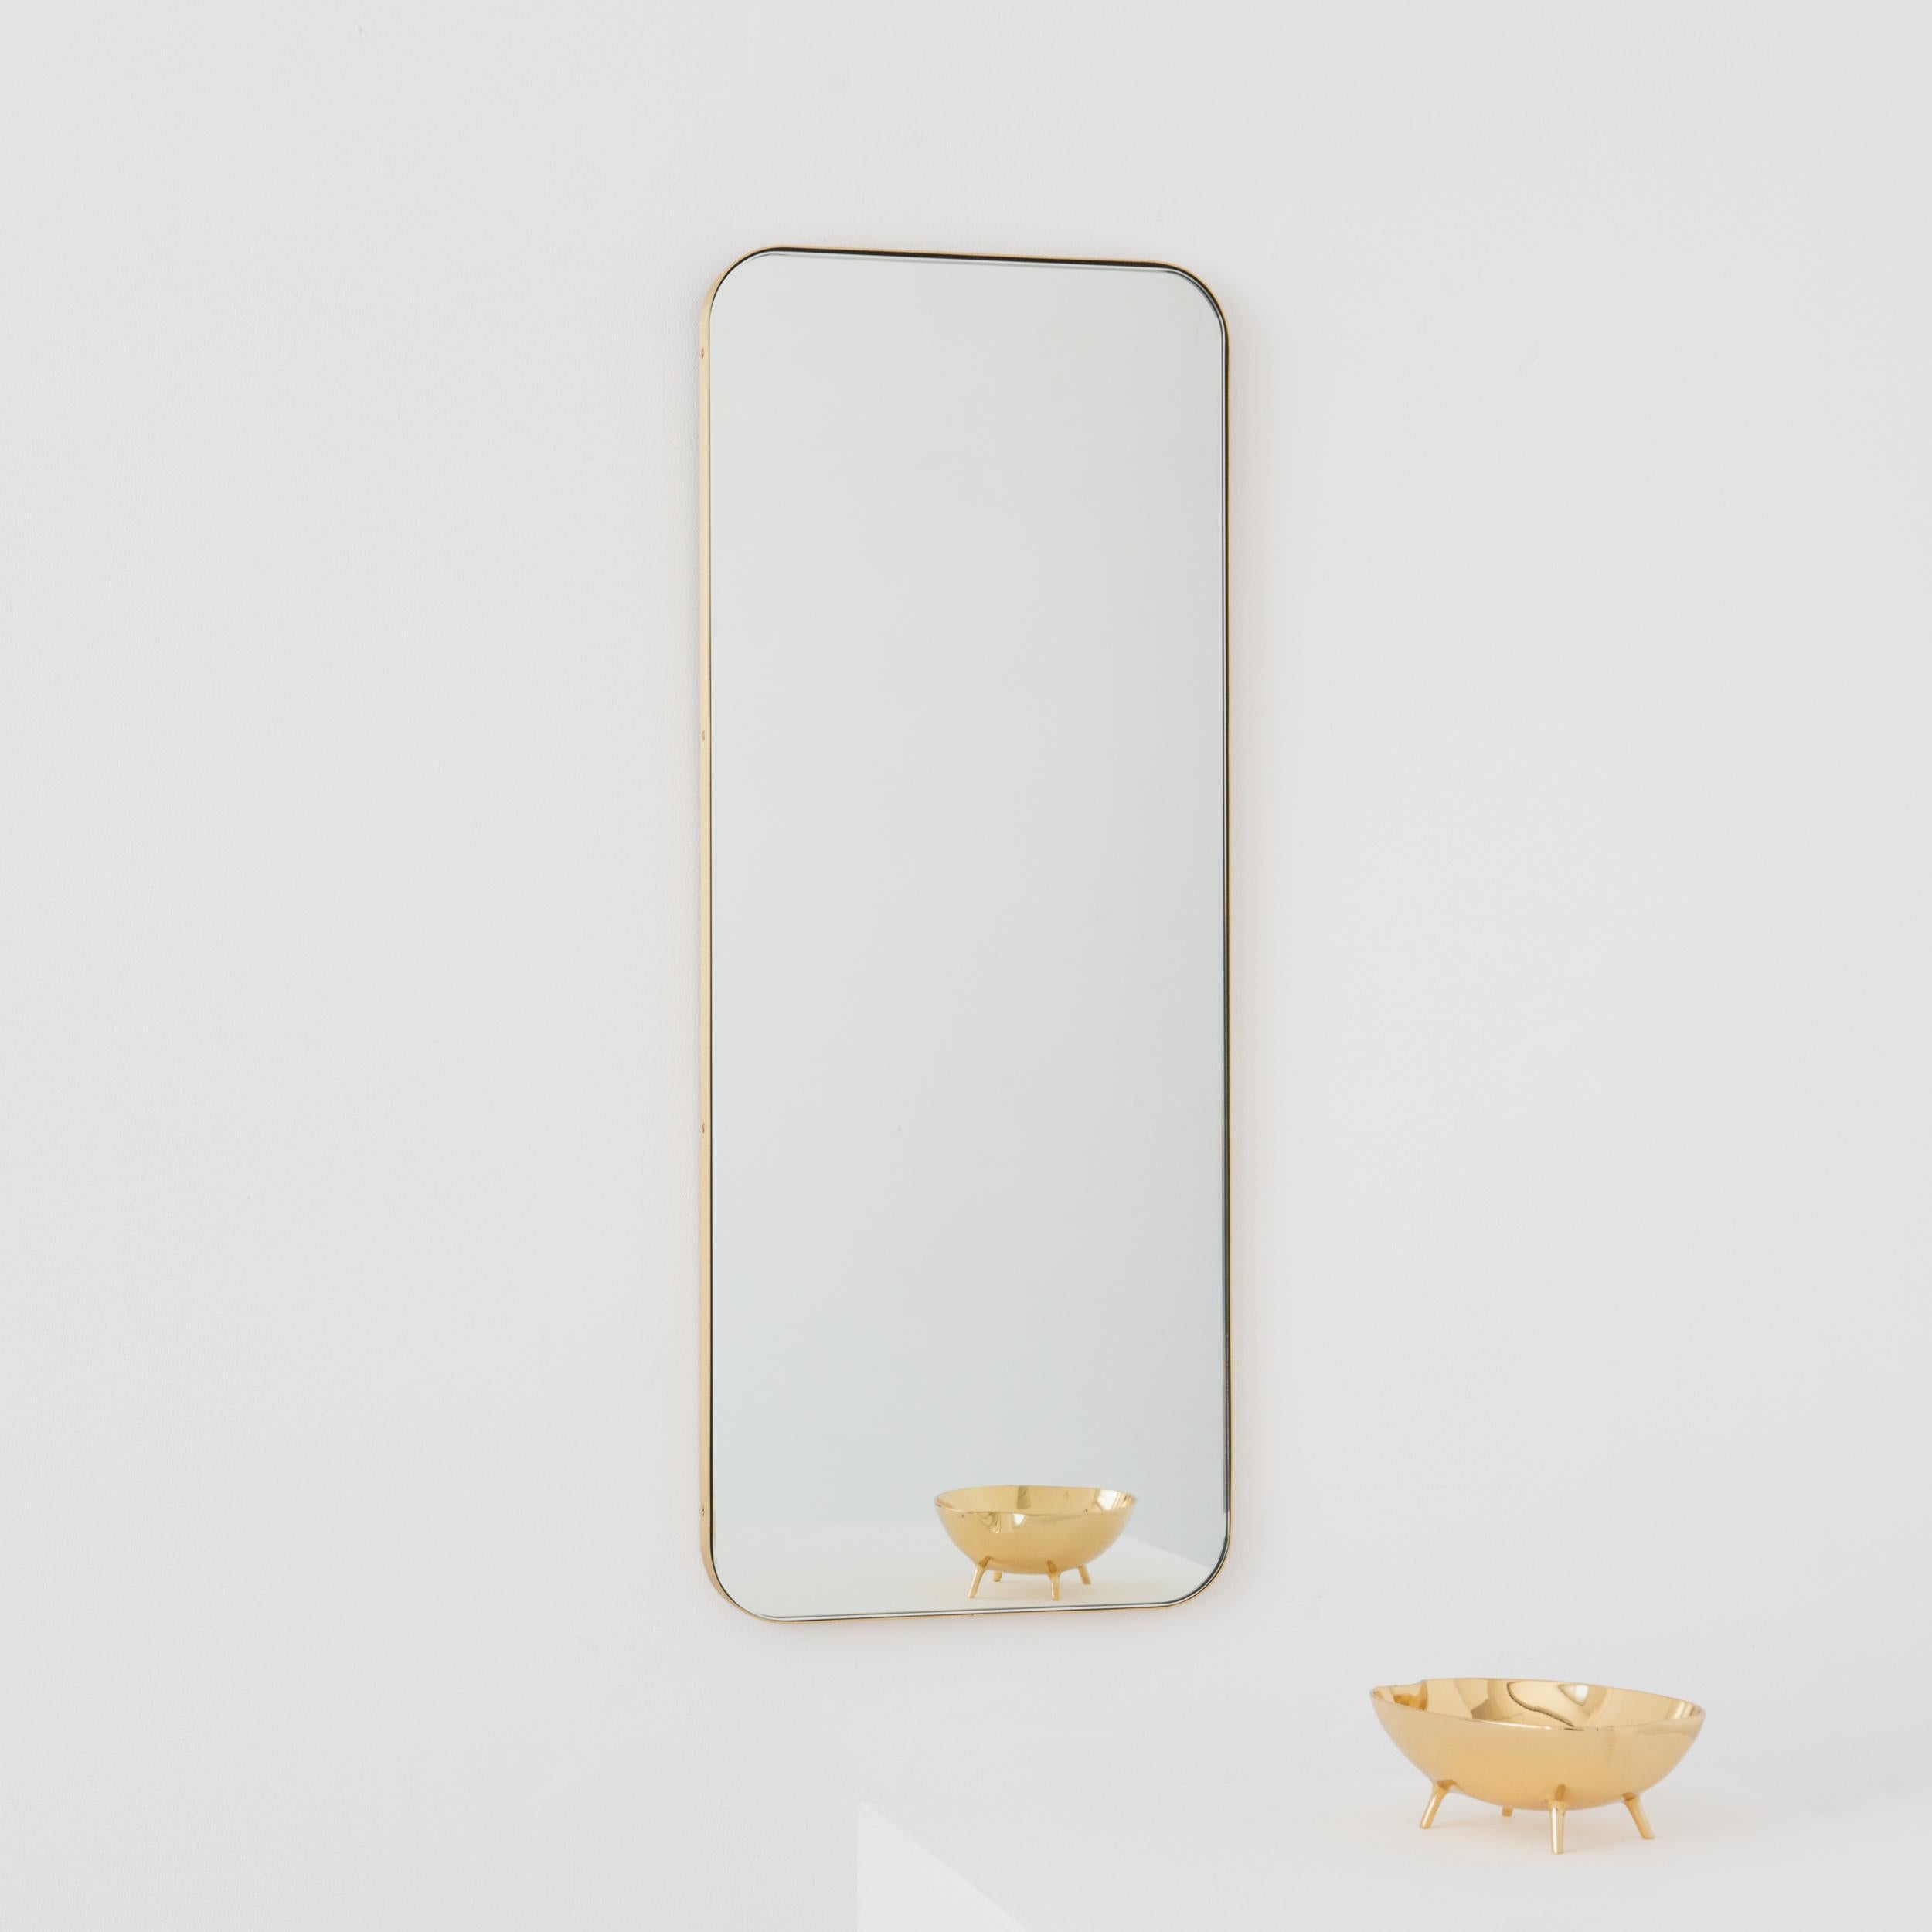 Moderner rechteckiger Spiegel mit einem eleganten Rahmen aus gebürstetem Messing. Teil der charmanten Quadris™ Kollektion, entworfen und handgefertigt in London, UK. 

Die mittelgroßen, großen und extragroßen Spiegel (37 cm x 56 cm, 46 cm x 71 cm